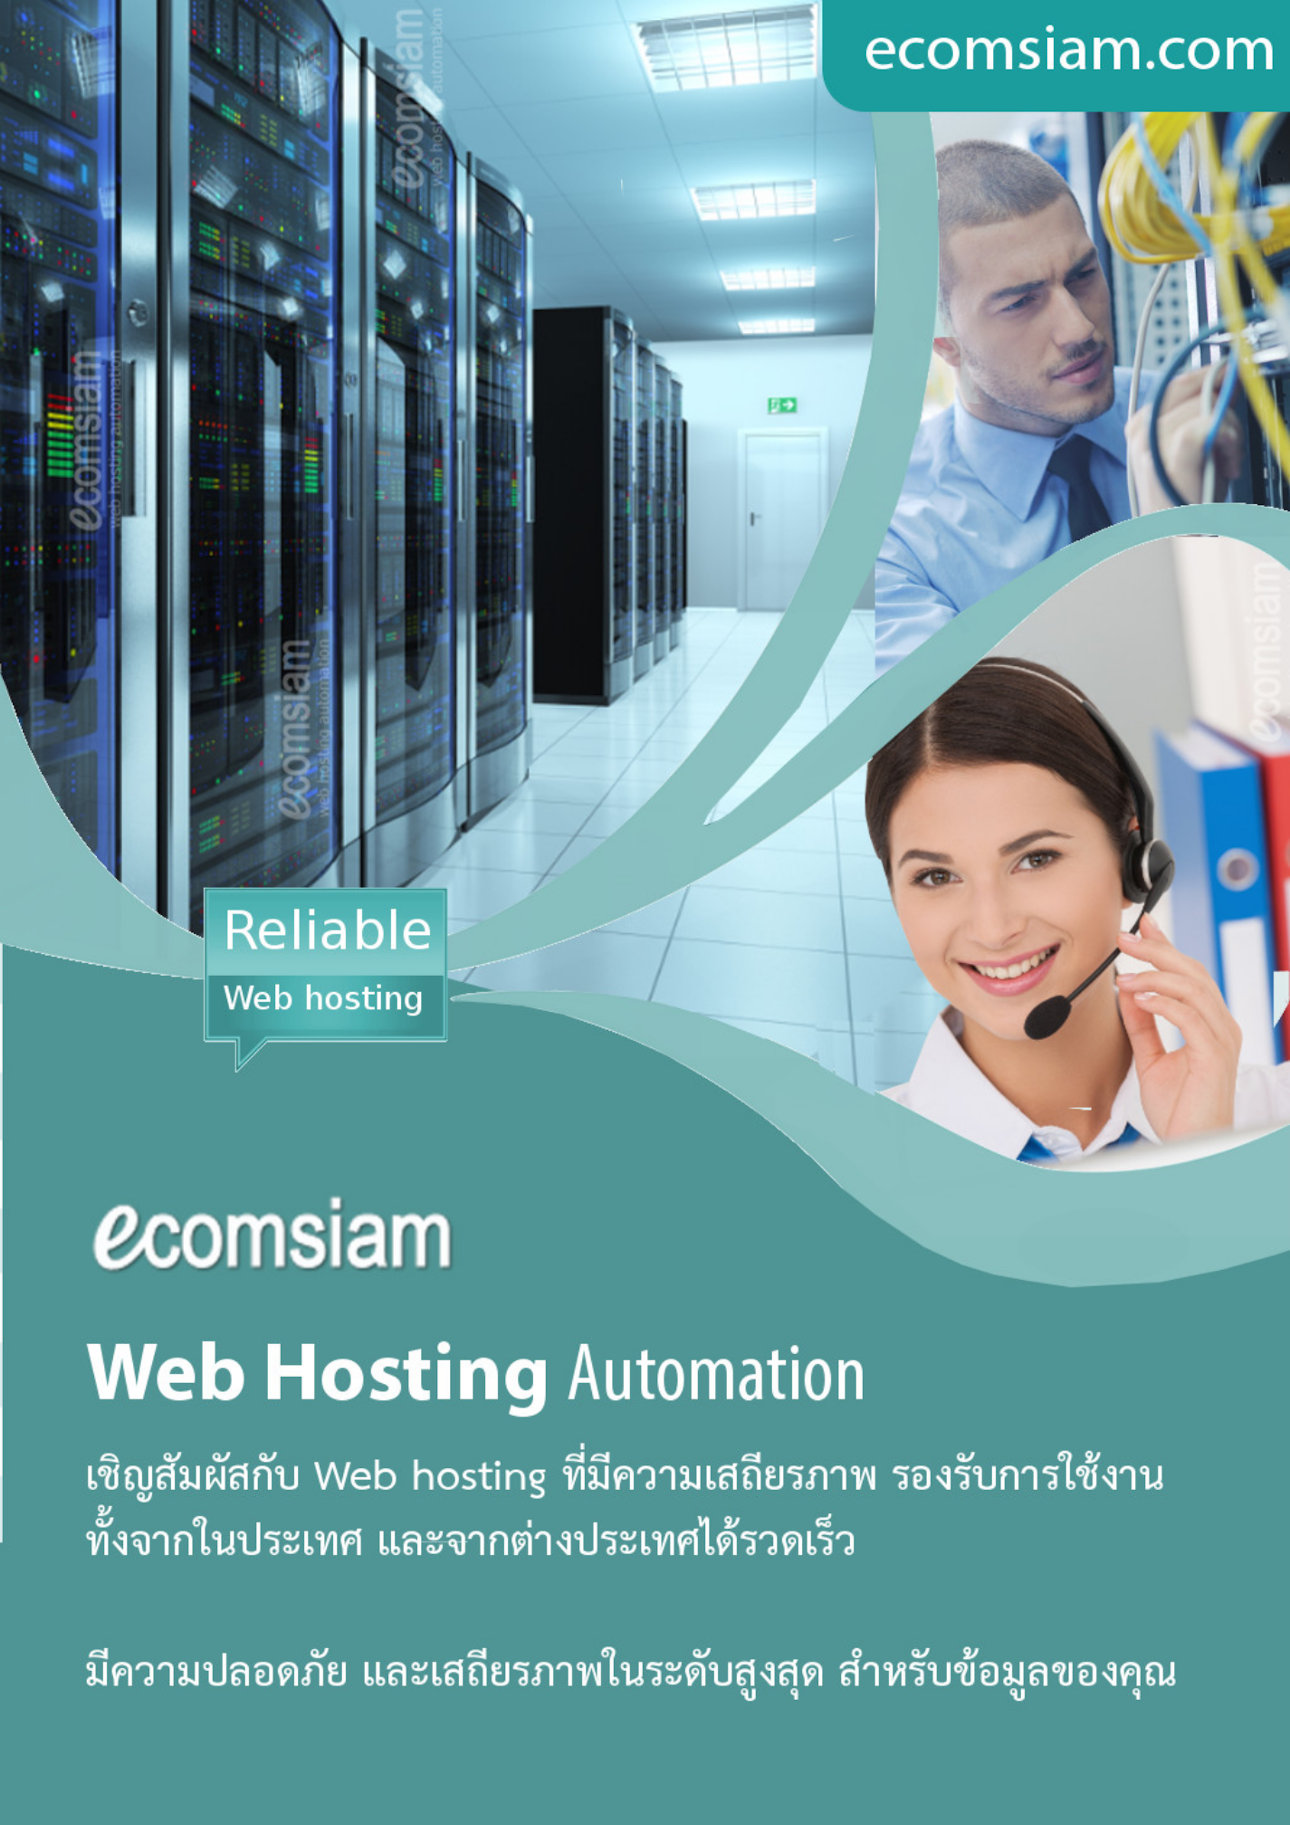 โบรชัวรบริการ  Web Hosting thai คุณภาพ บริการดี พื้นที่มาก  คุณภาพสูง  hosting ฟรีโดเมน ฟรี SSL ระบบควบคุมจัดการ Web hosting ไทย ที่ง่าย สะดวก และปลอดภัย อีเมลและเว็บไซต์สำหรับธุรกิจของคุณ มีระบบเก็บ log file ตามกฏหมาย มีความปลอดภัยในการใช้งาน พร้อมมีระบบสำรองข้อมูลรายวัน (daily backup) และ สำรองข้อมูลรายสัปดาห์ (weekly backup) ระบบป้องกันไวรัสจากอีเมล์ (virus protection) พร้อมระบบกรองสแปมส์เมล์หรือกรองอีเมล์ขยะ (Spammail filter) เริ่มต้นเพียง 2,200 บาทต่อปี  โทร.หาเราตอนนี้เลย  02-9682665   บริการลูกค้าดี ดูแลดี  แนะนำเว็บโฮสติ้ง โดย webhosting.com.co.th